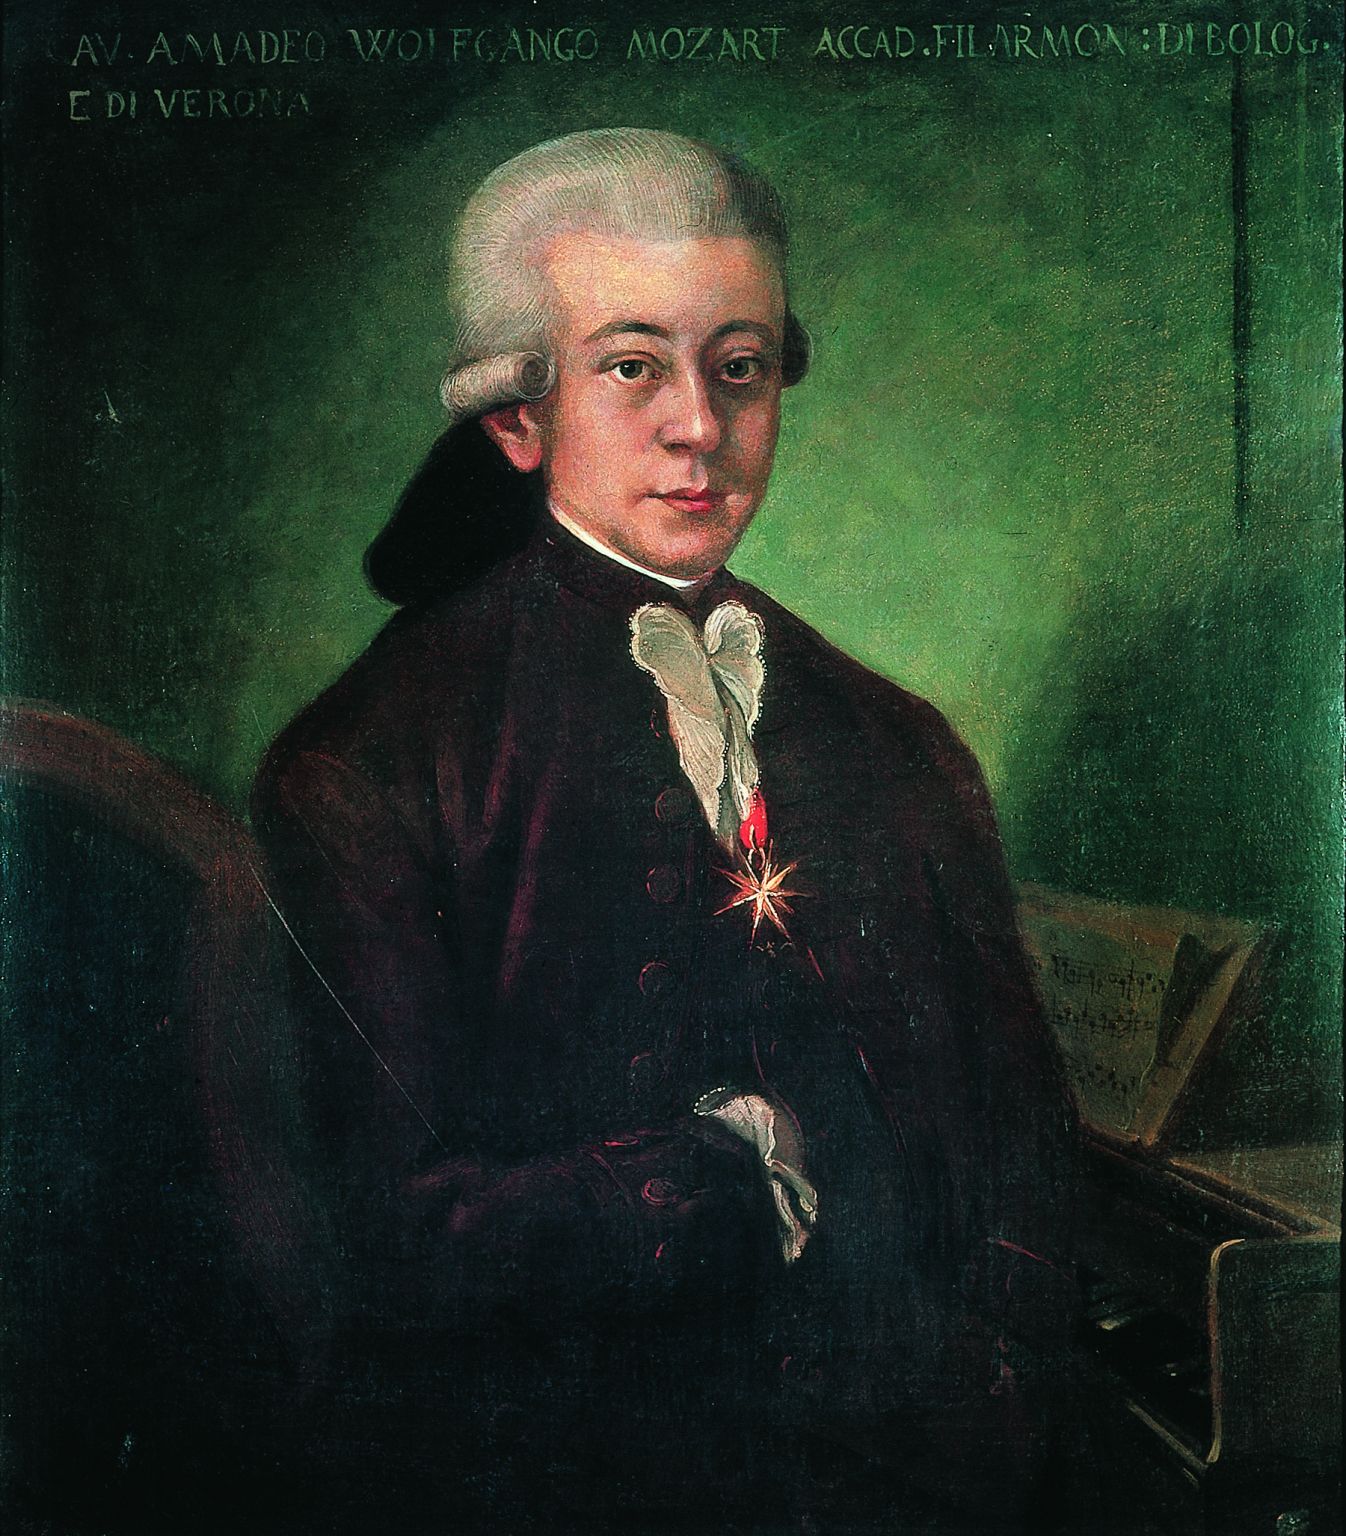 portrait de Wolfgang Amadeus Mozart (anonyme de 1777)